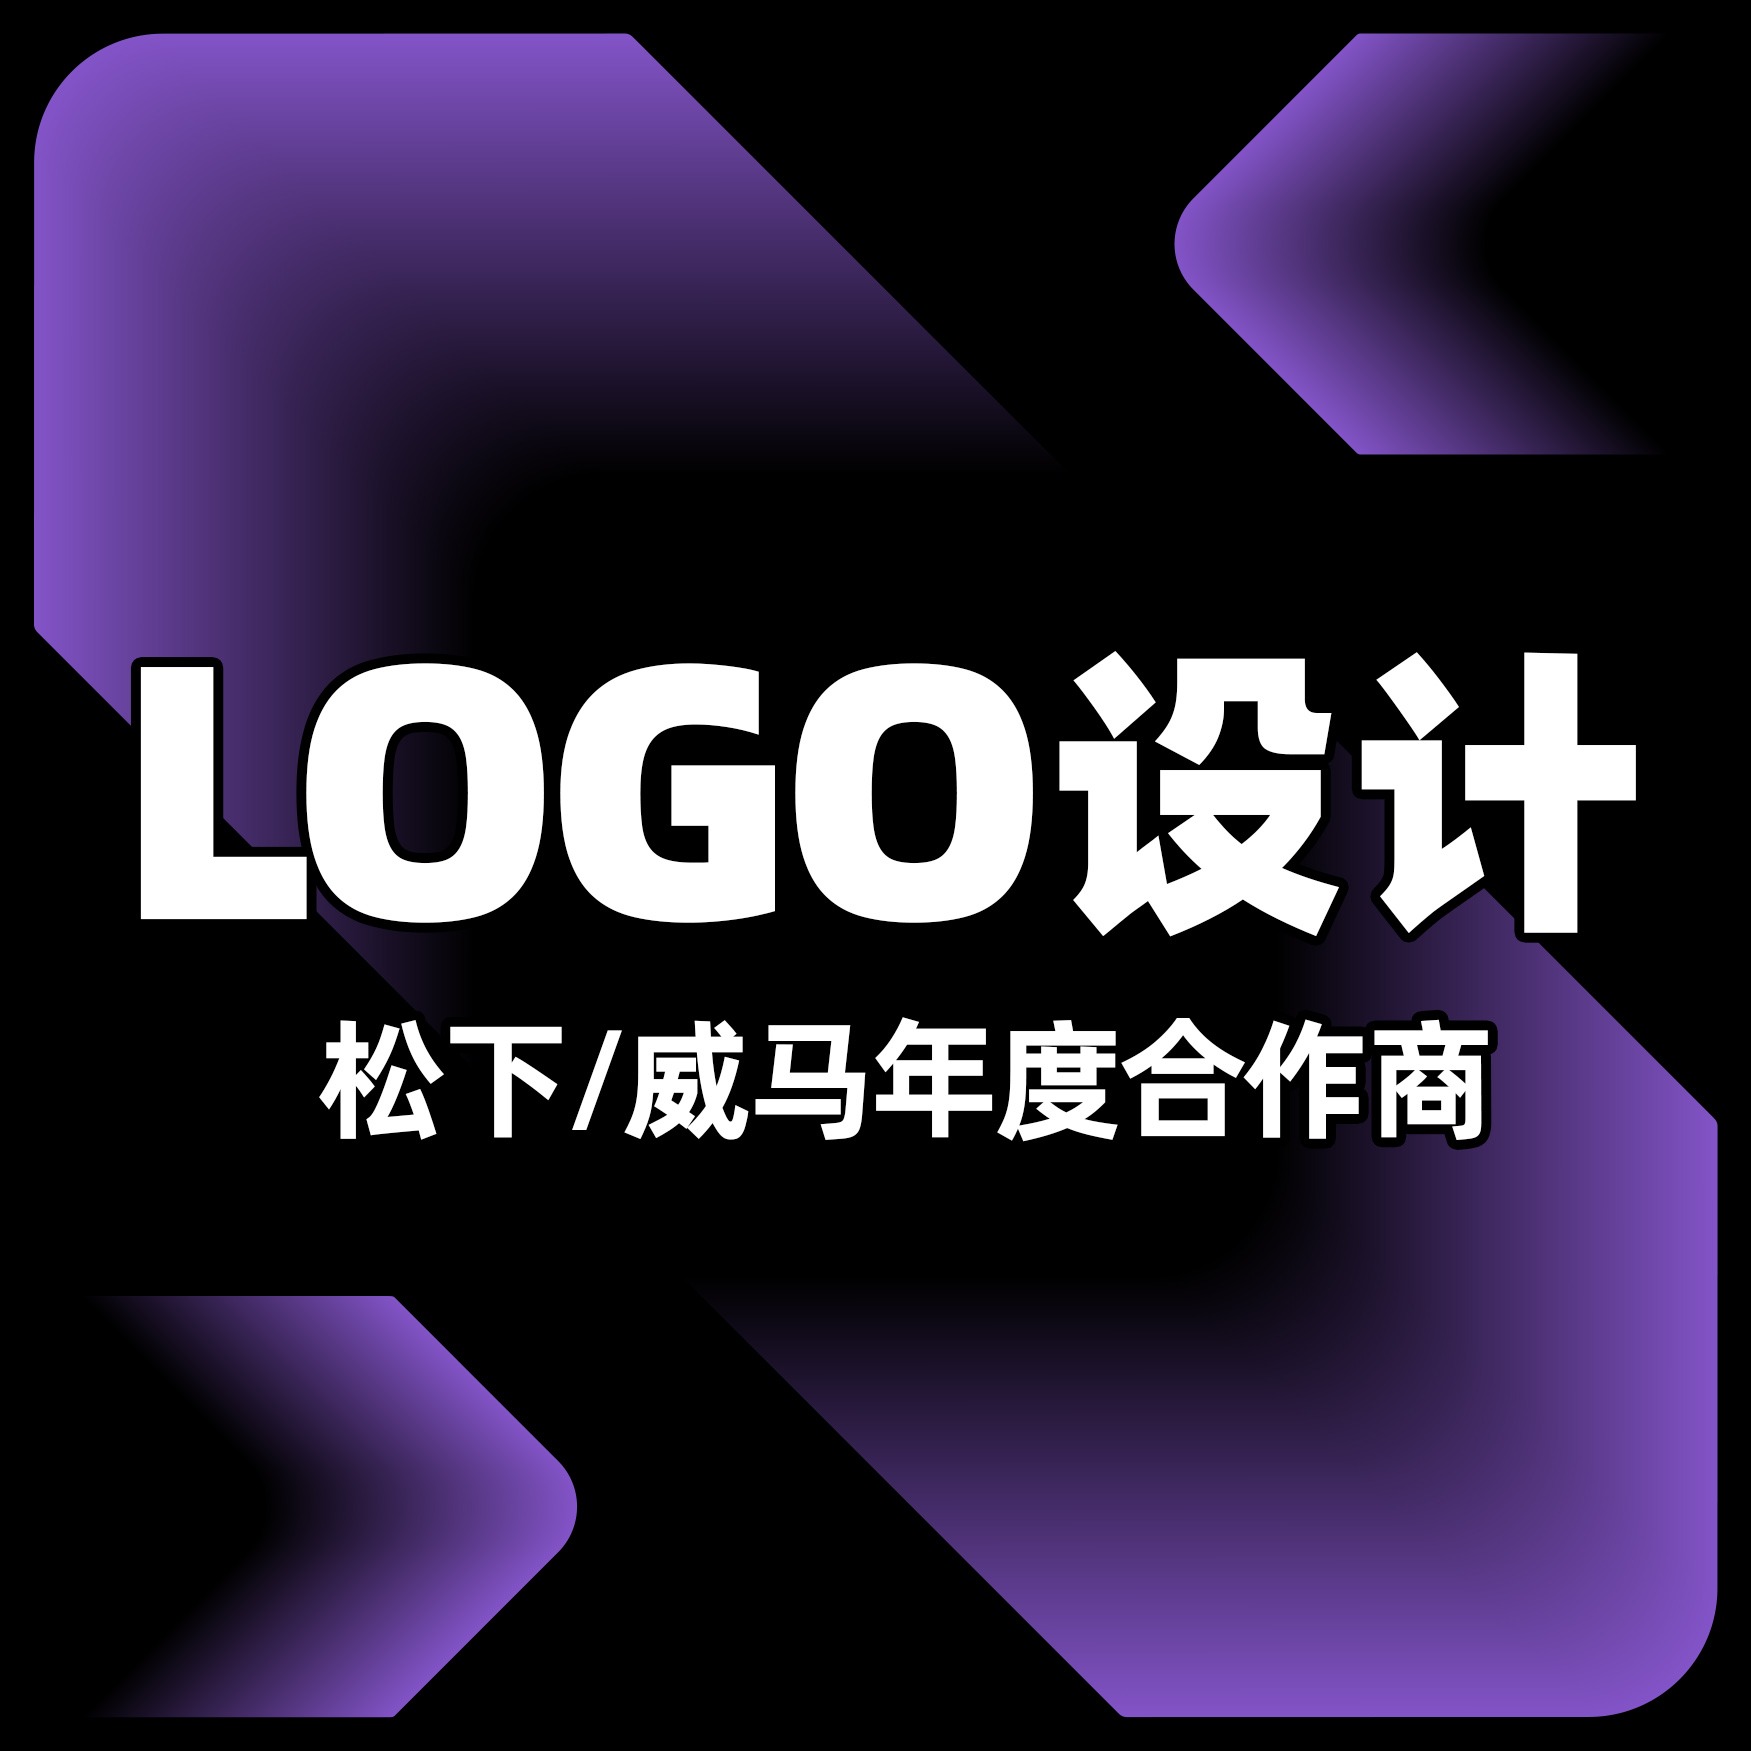 企业logo设计旅游酒店环保金融地产汽车平面品牌商标升级设计